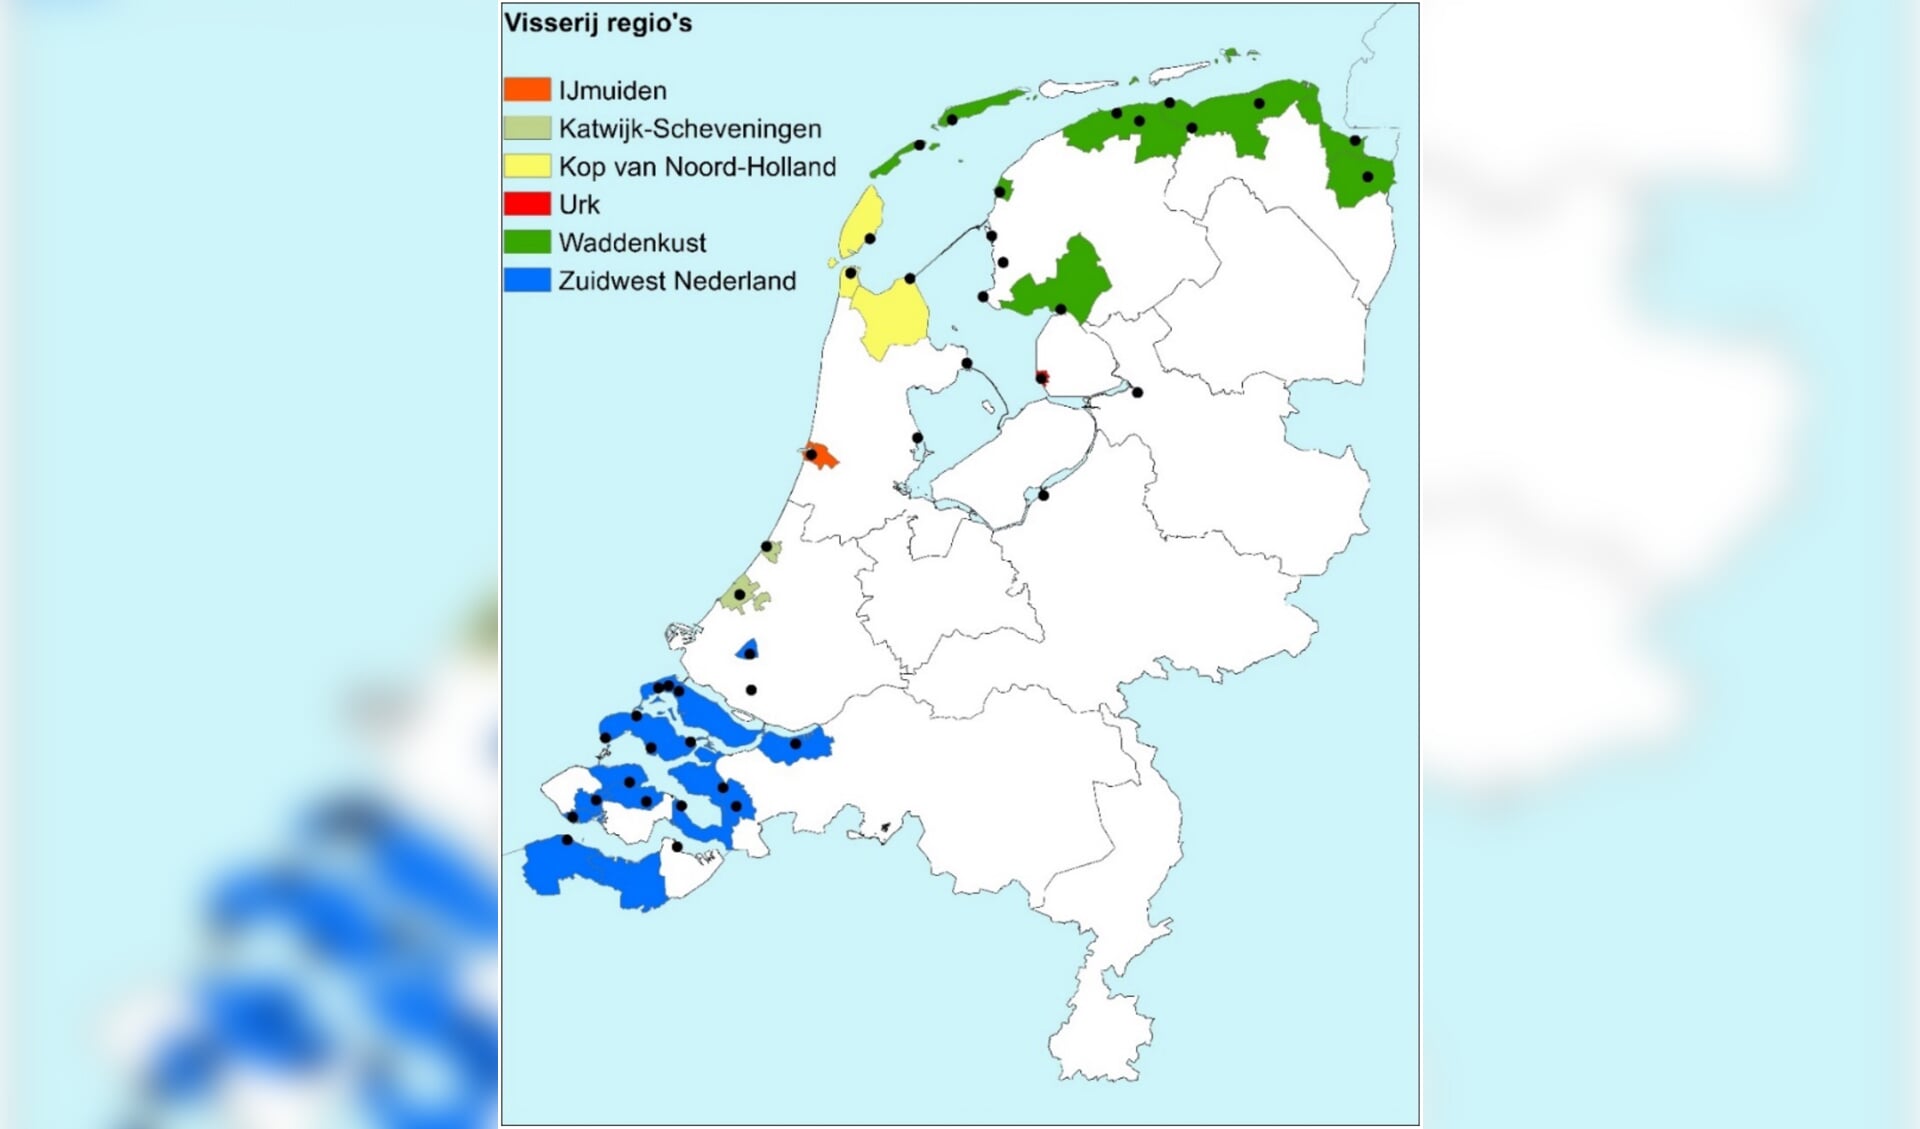 H Figuur 2. De zes visserijregio’s op de kaart van Nederland. De zwarte stippen zijn vissersdorpen.